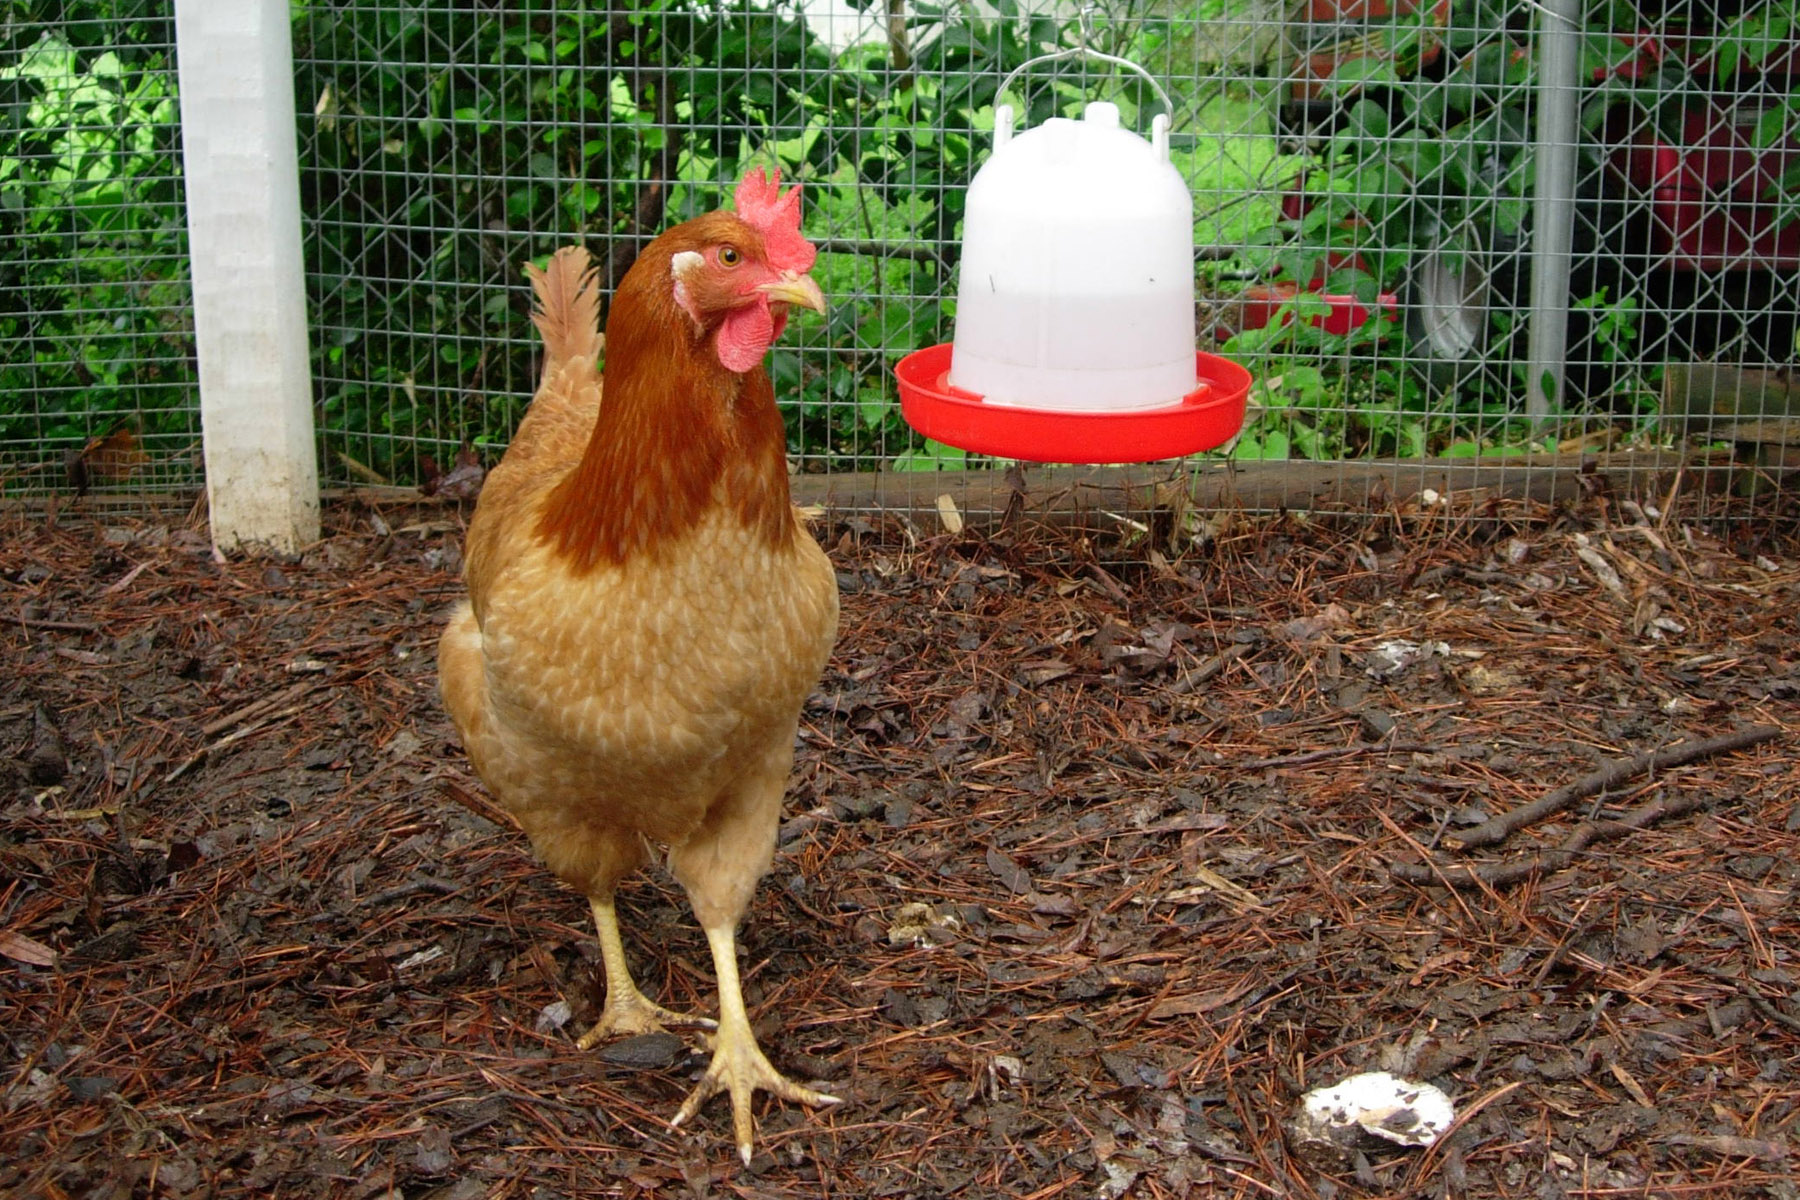 Chicken inside a coop near a water dispenser.